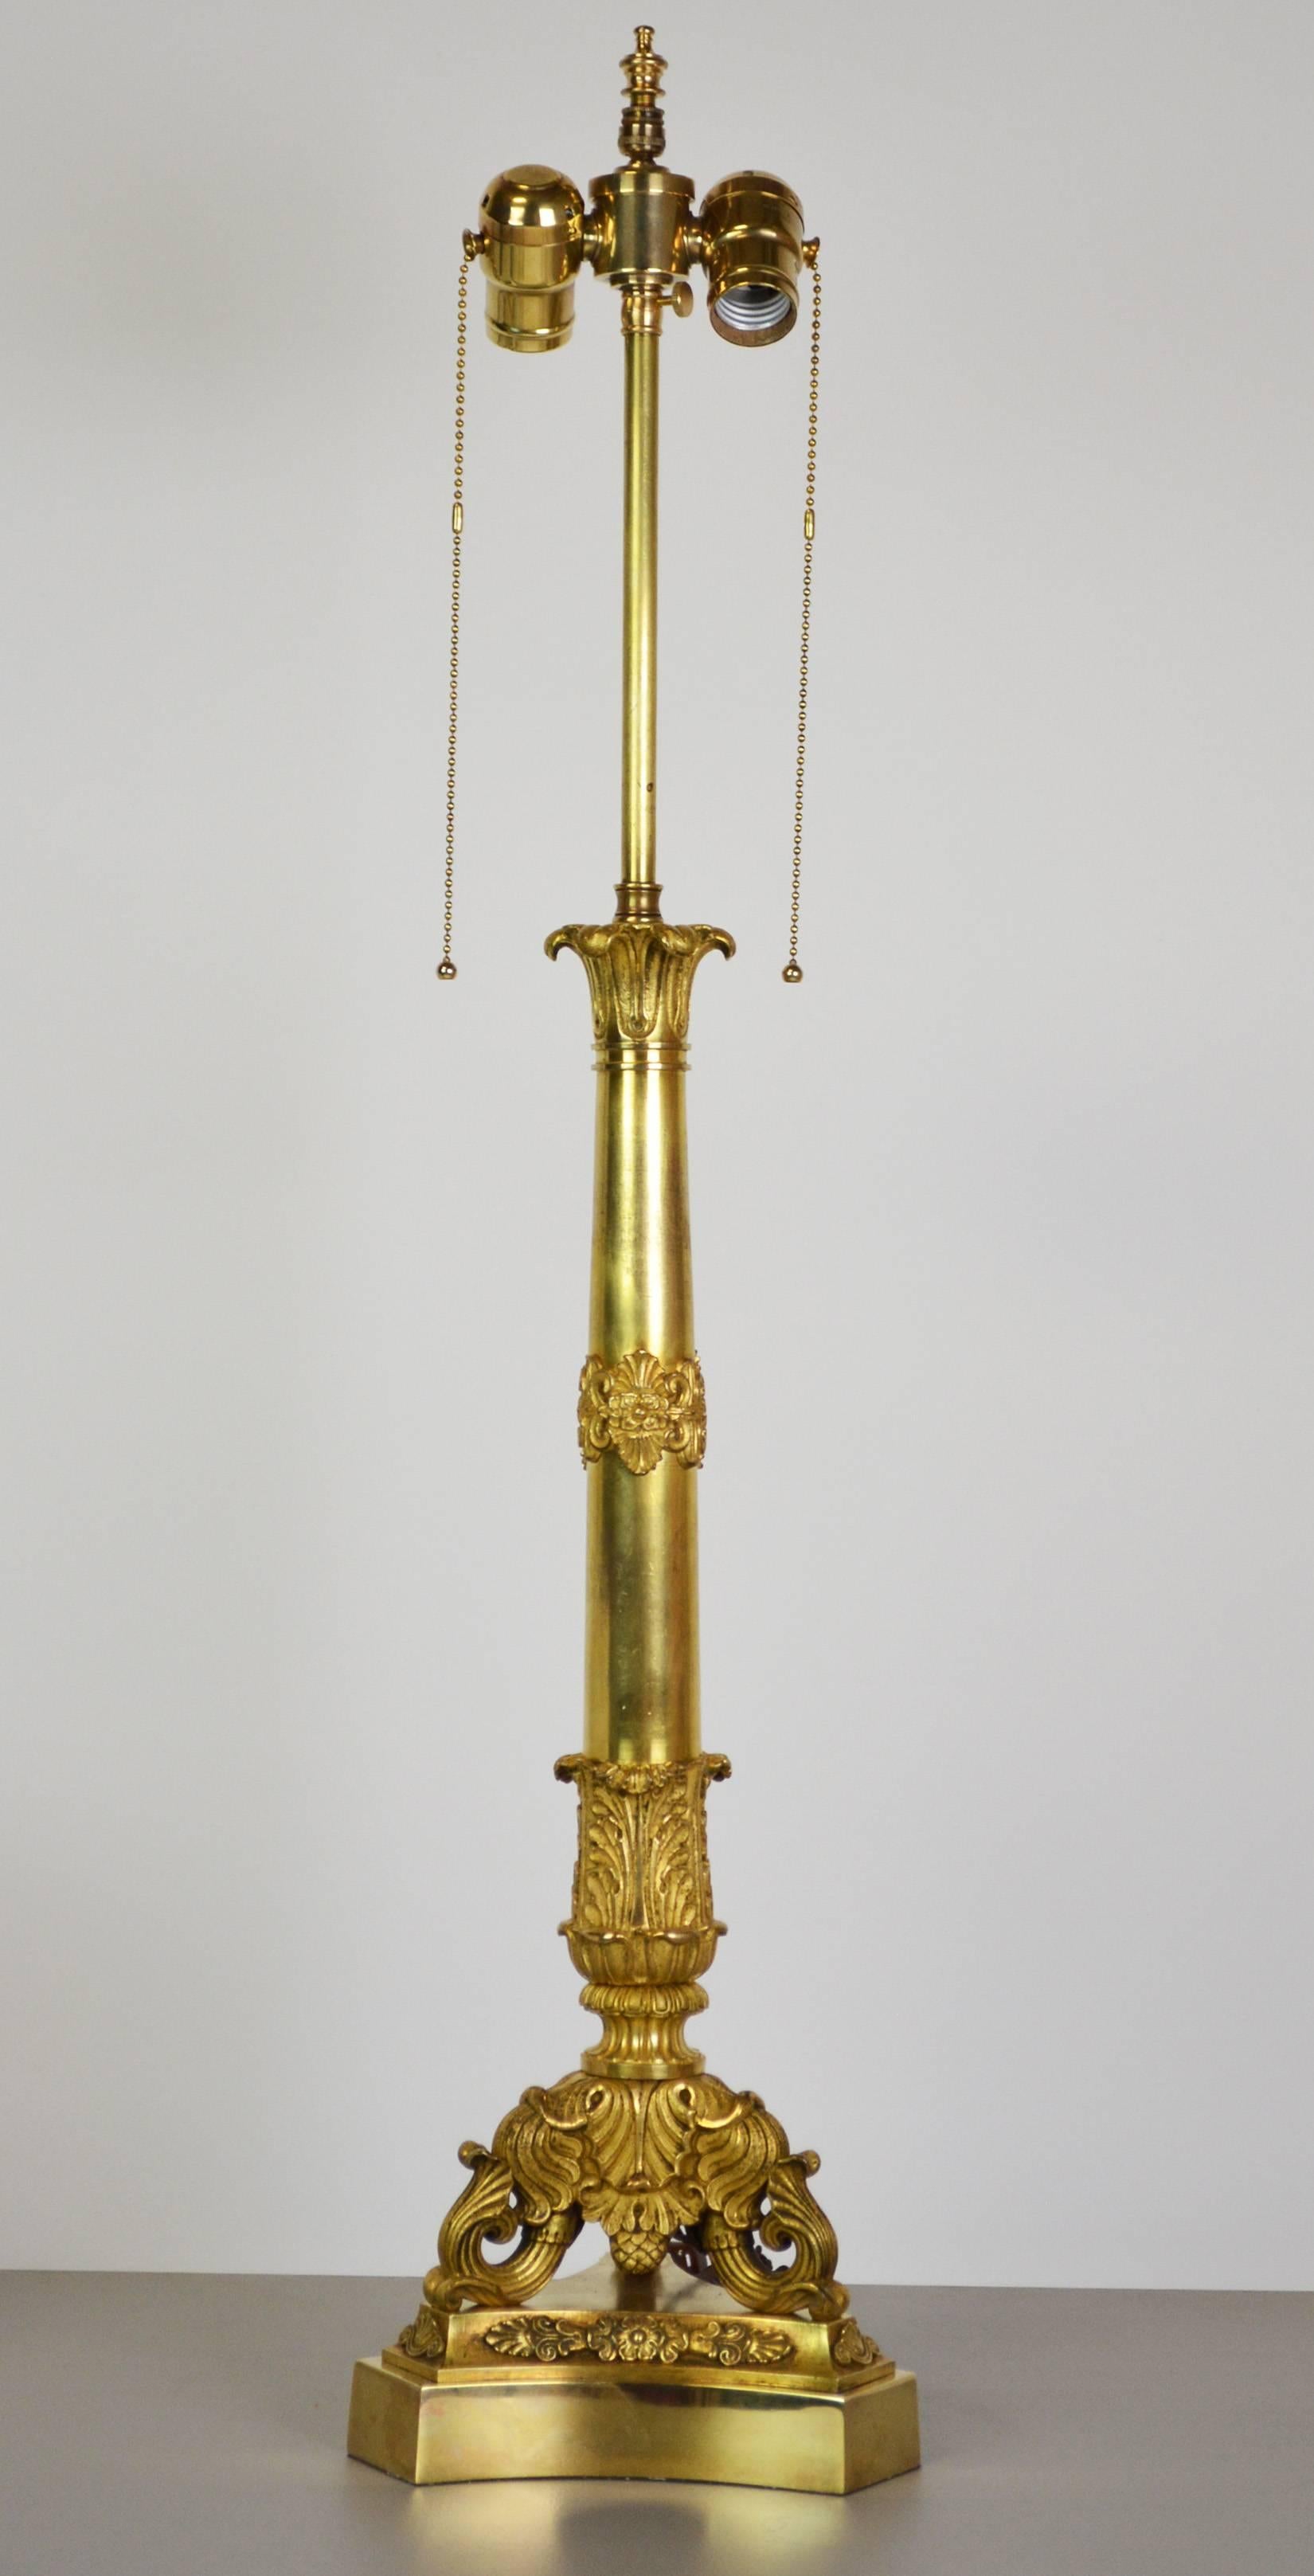 Eine vergoldete Bronzelampe von hoher Qualität aus dem 19. Jahrhundert mit fein ziselierten neoklassizistischen Details. Dreibeinige Basis stützt einen konischen Schaft mit dekorativen Beschlägen, der von einer blütenförmigen Spitze gekrönt wird.